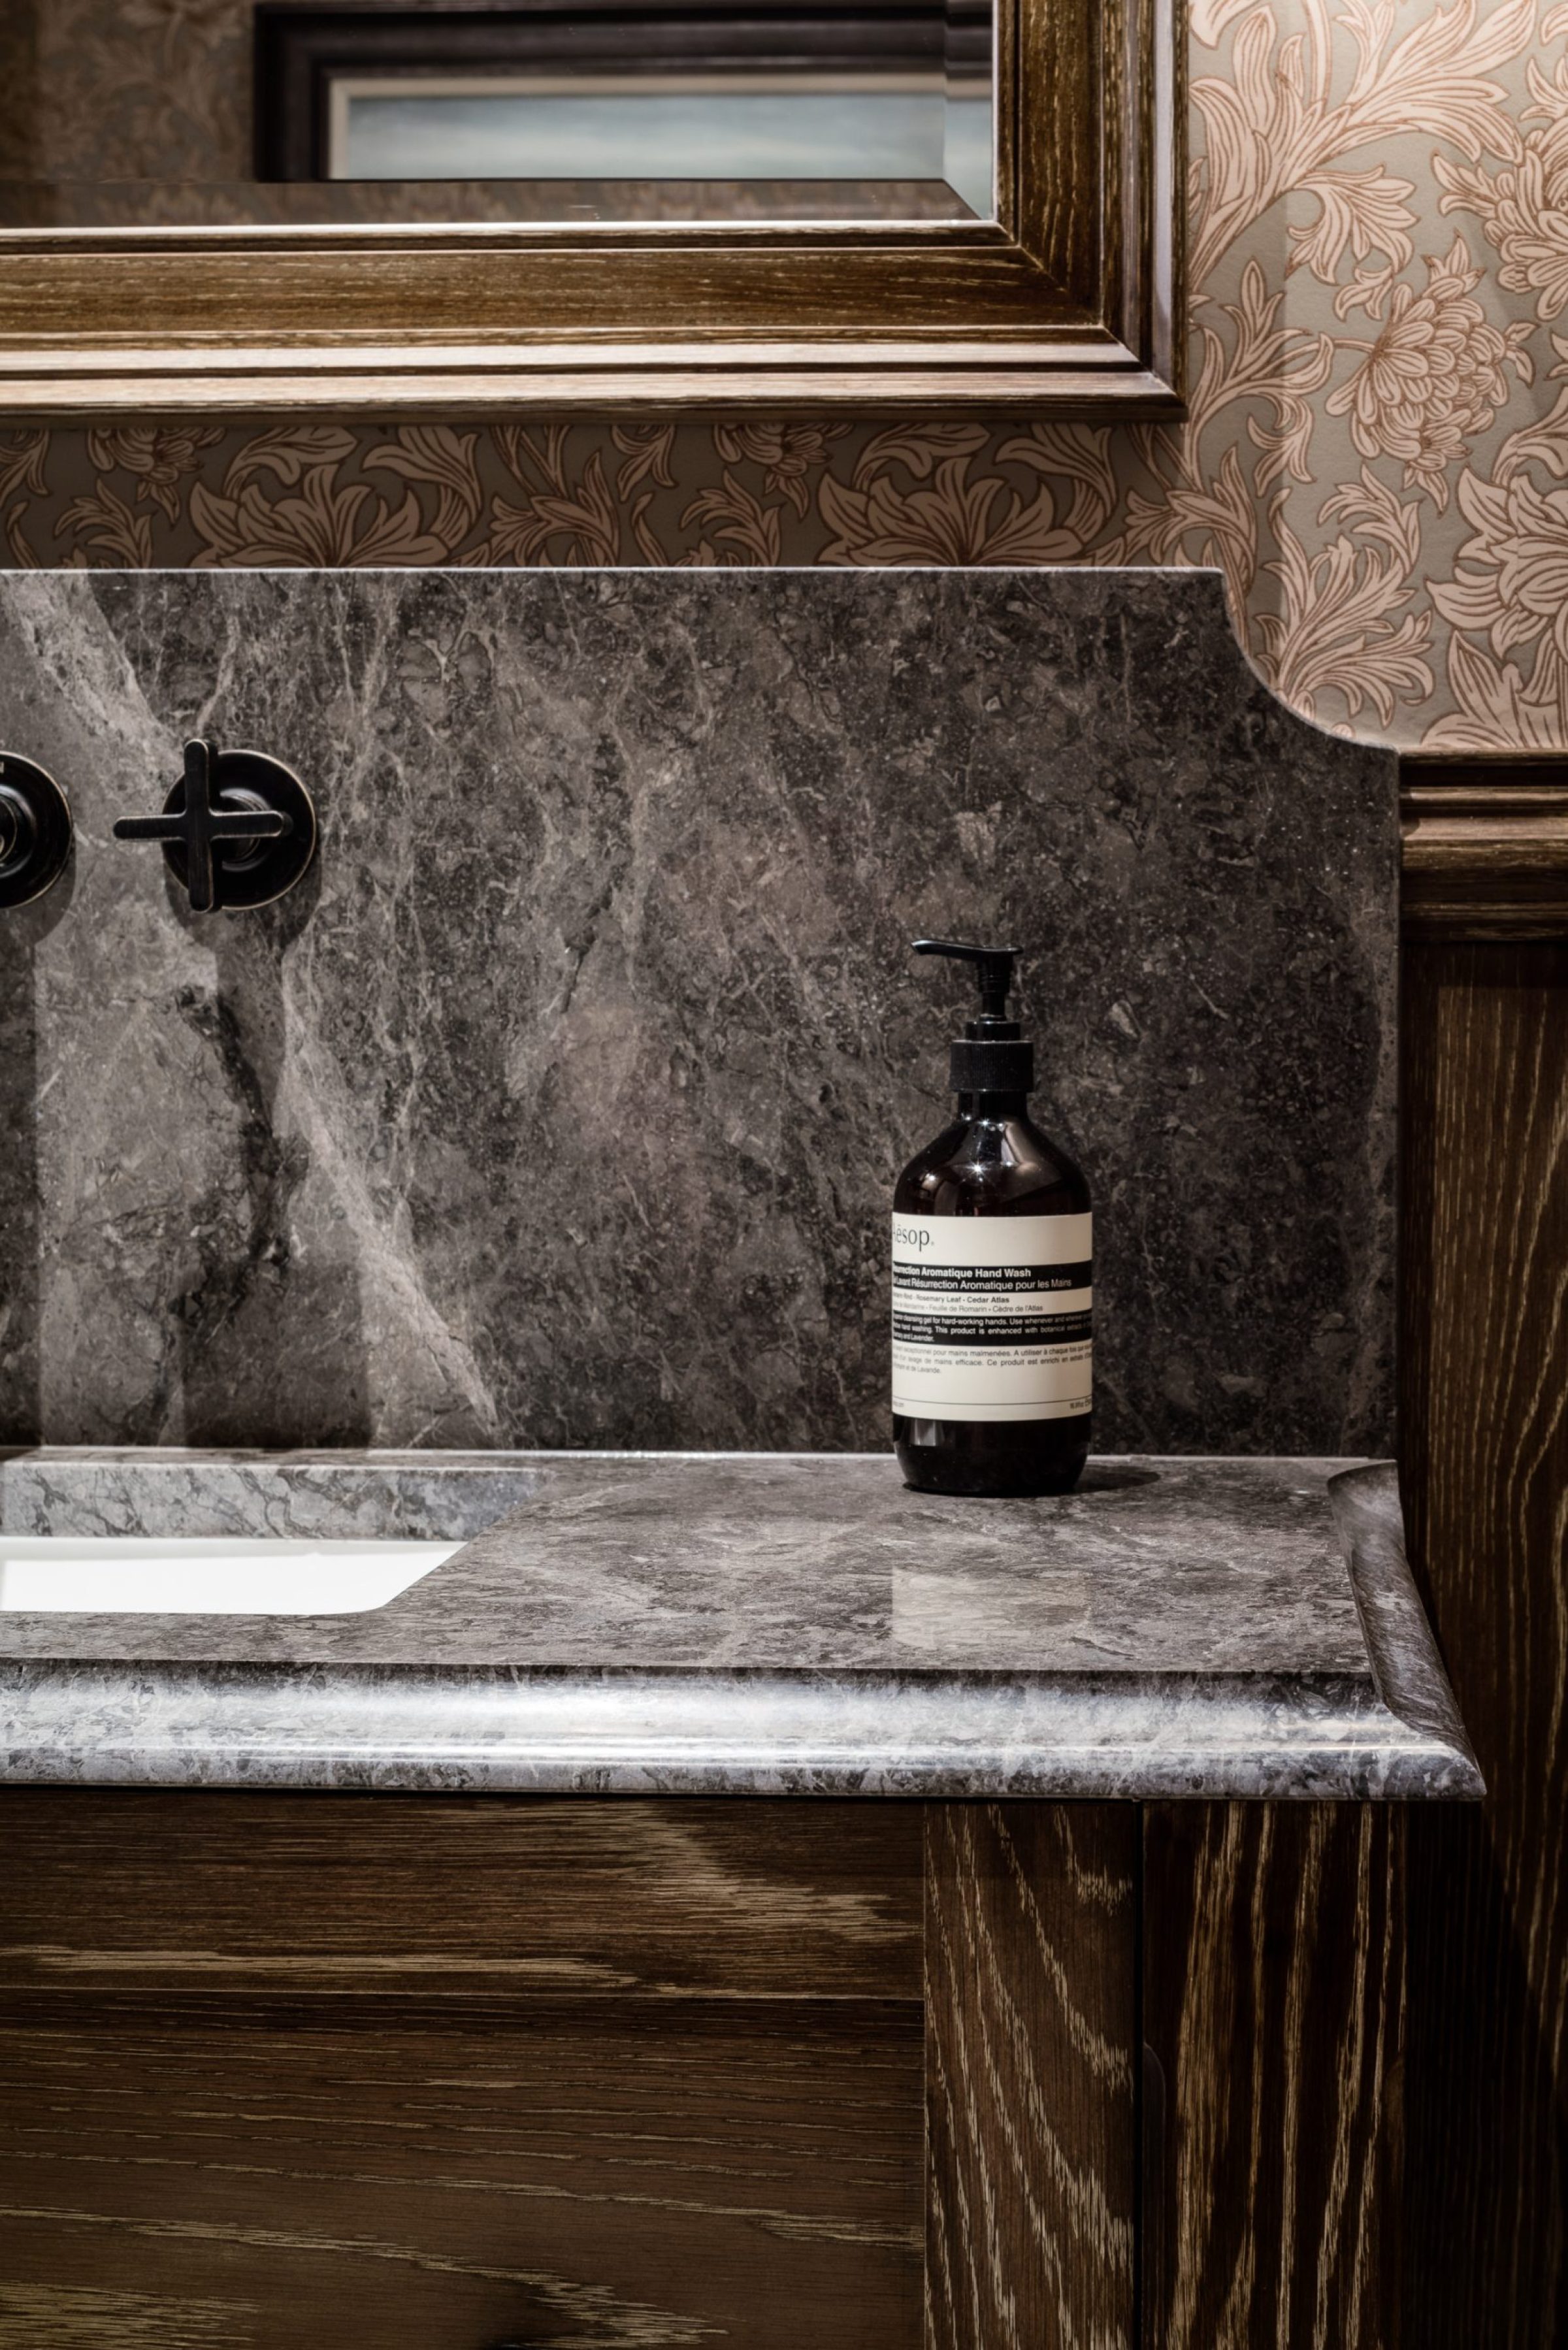 bespoke vanity sink design marble wood